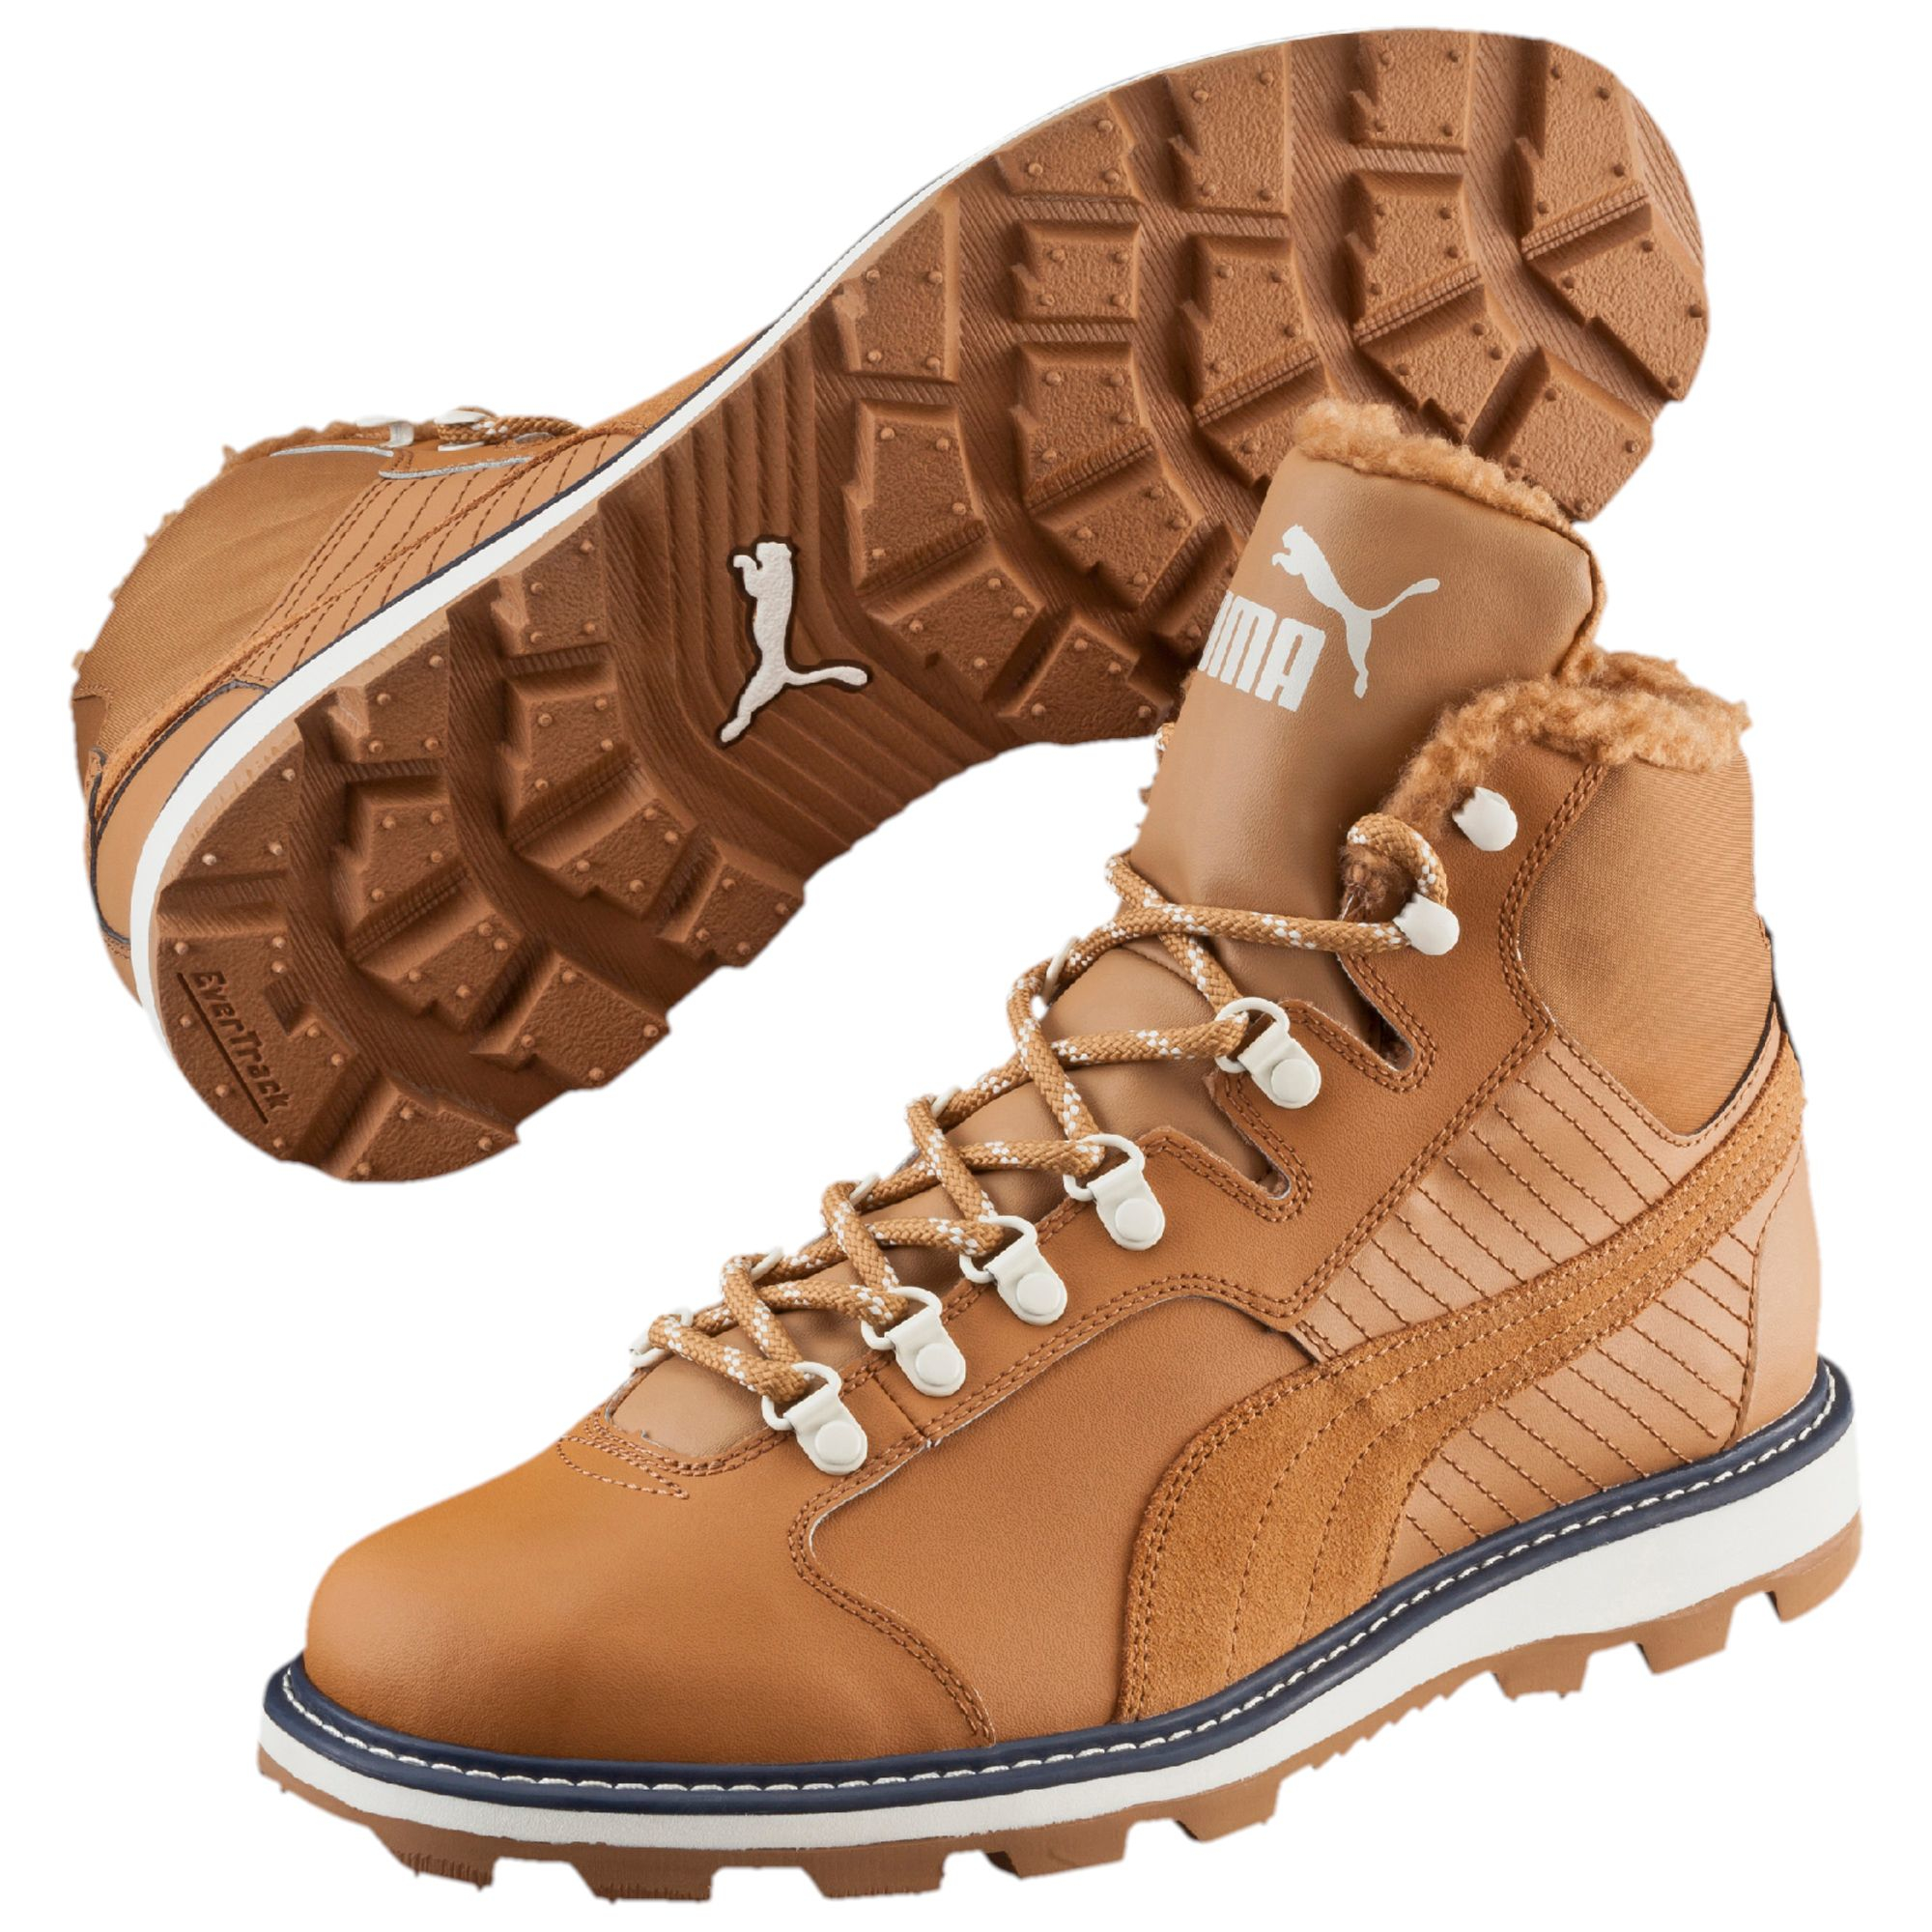 puma brown boots off 52% - www 